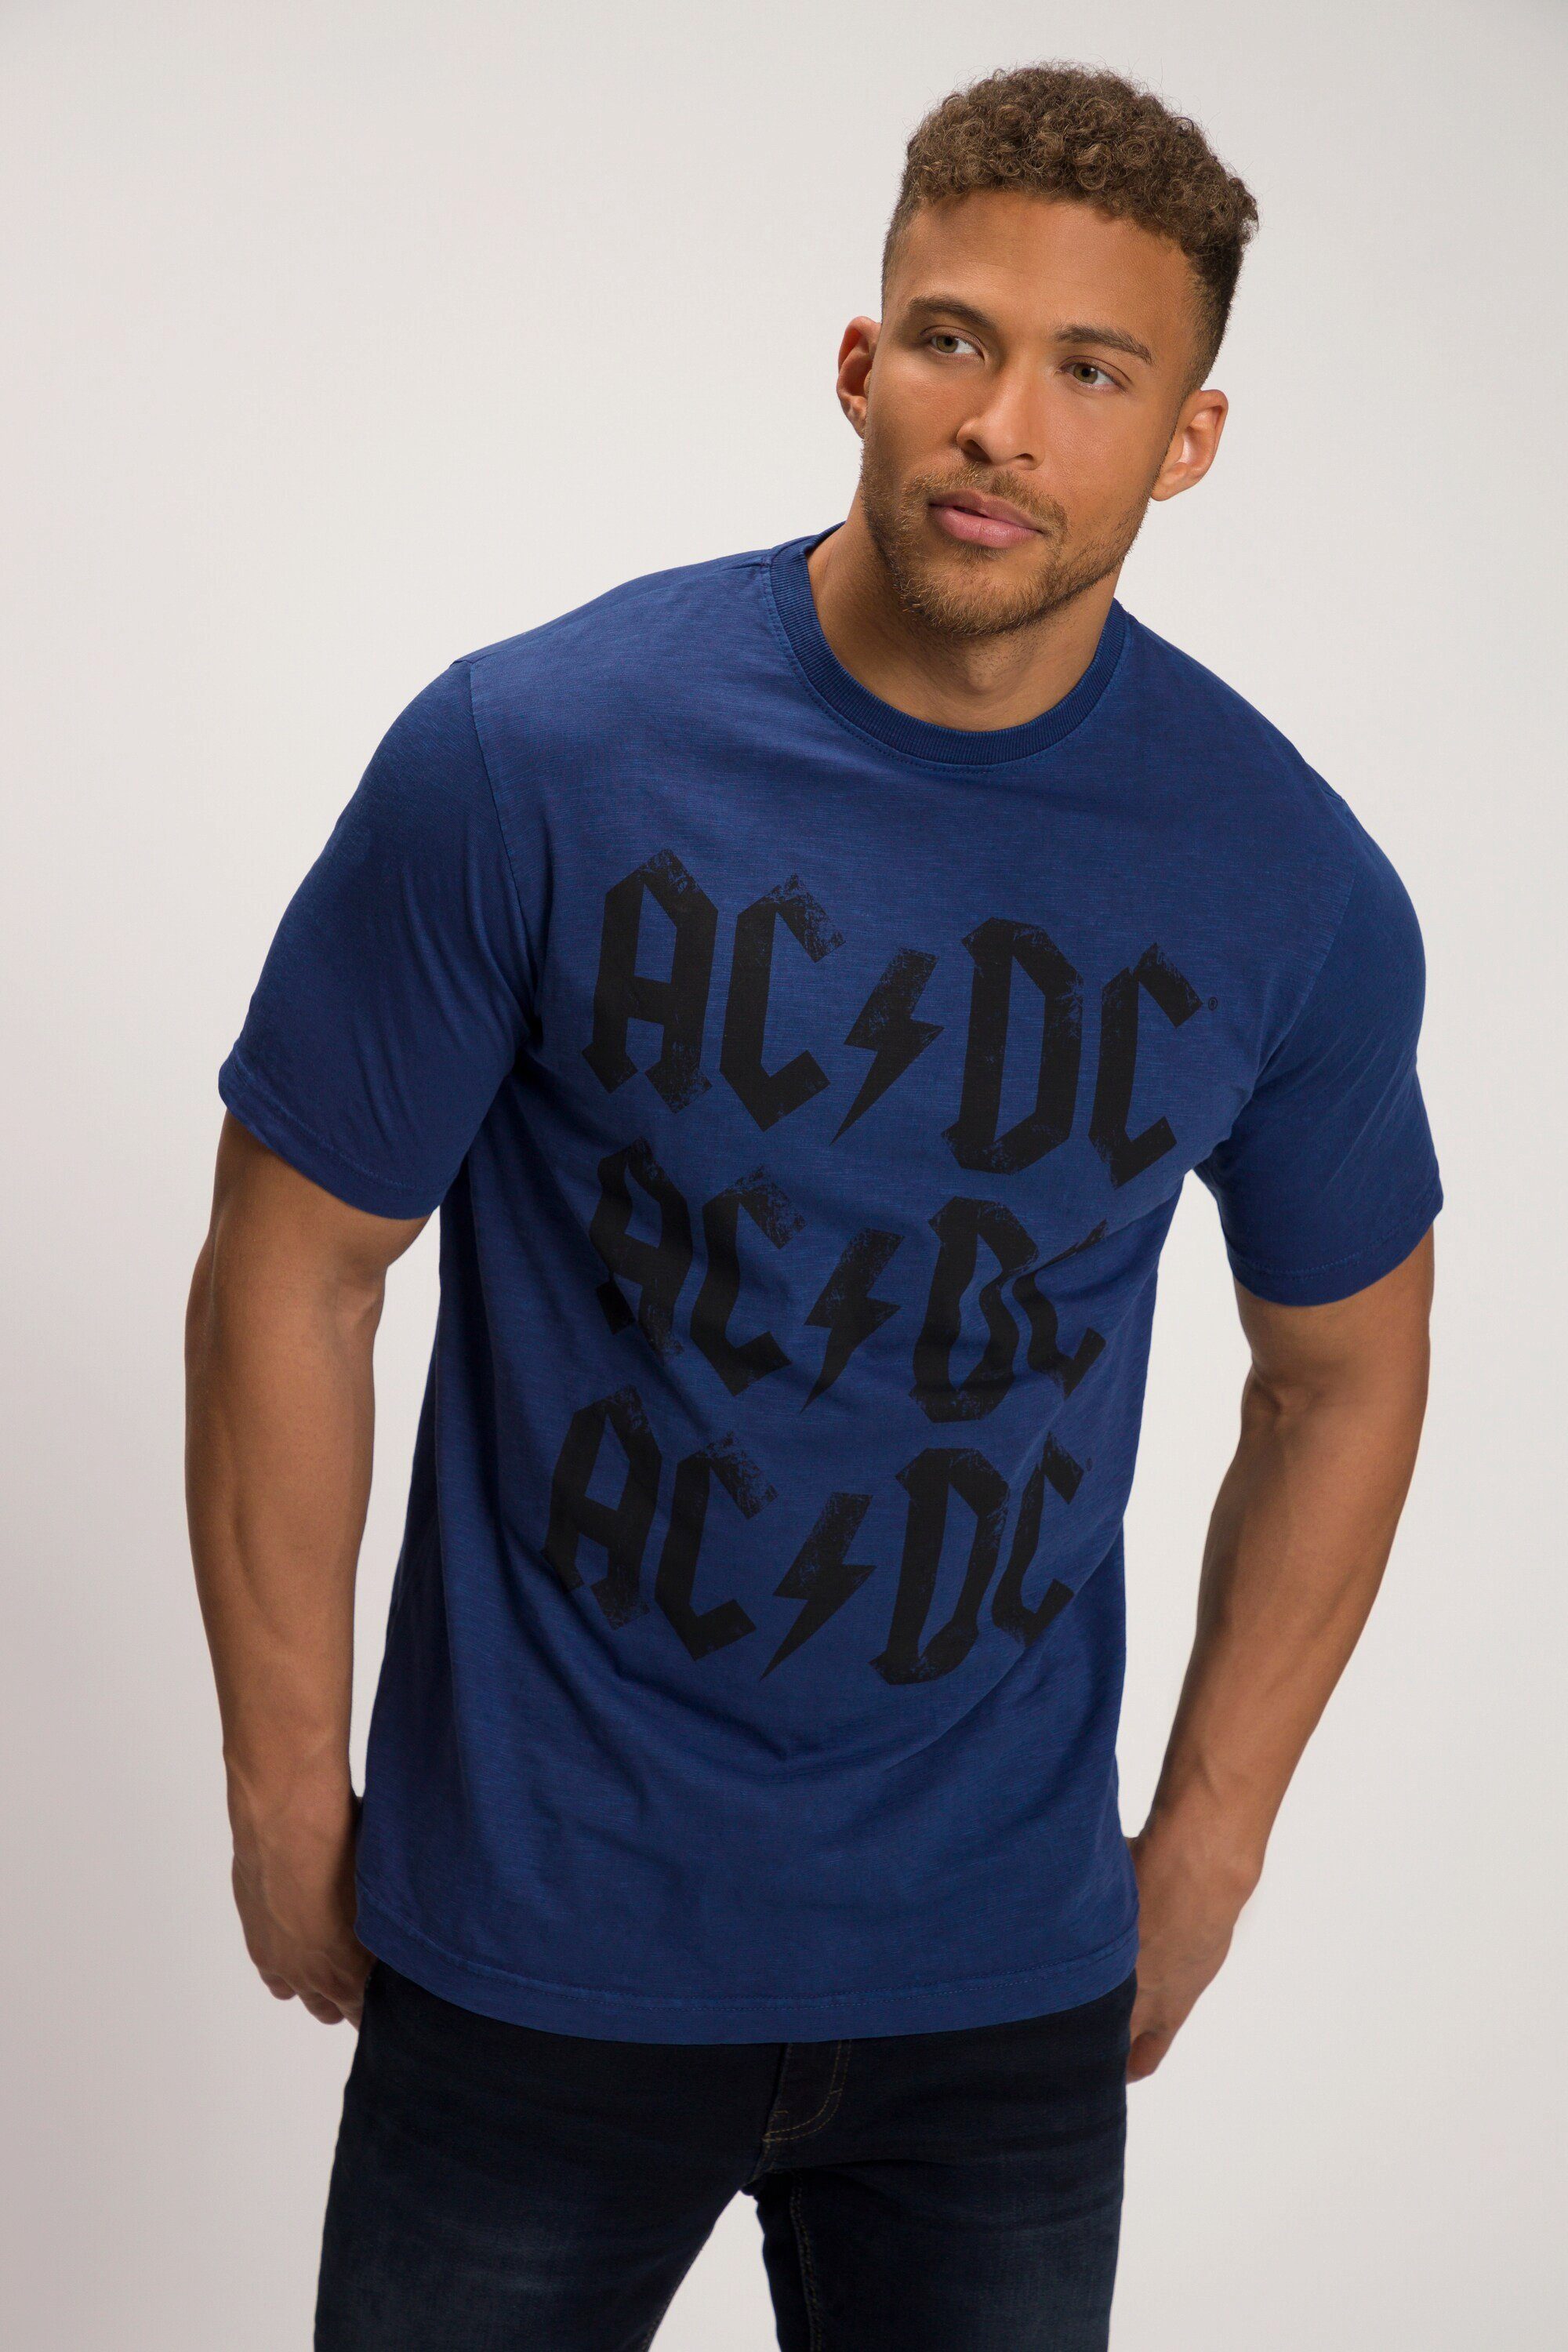 Bandshirt 8 Halbarm T-Shirt bis T-Shirt 8 JP1880 bis XL Spezialschnitt AC/DC XL,